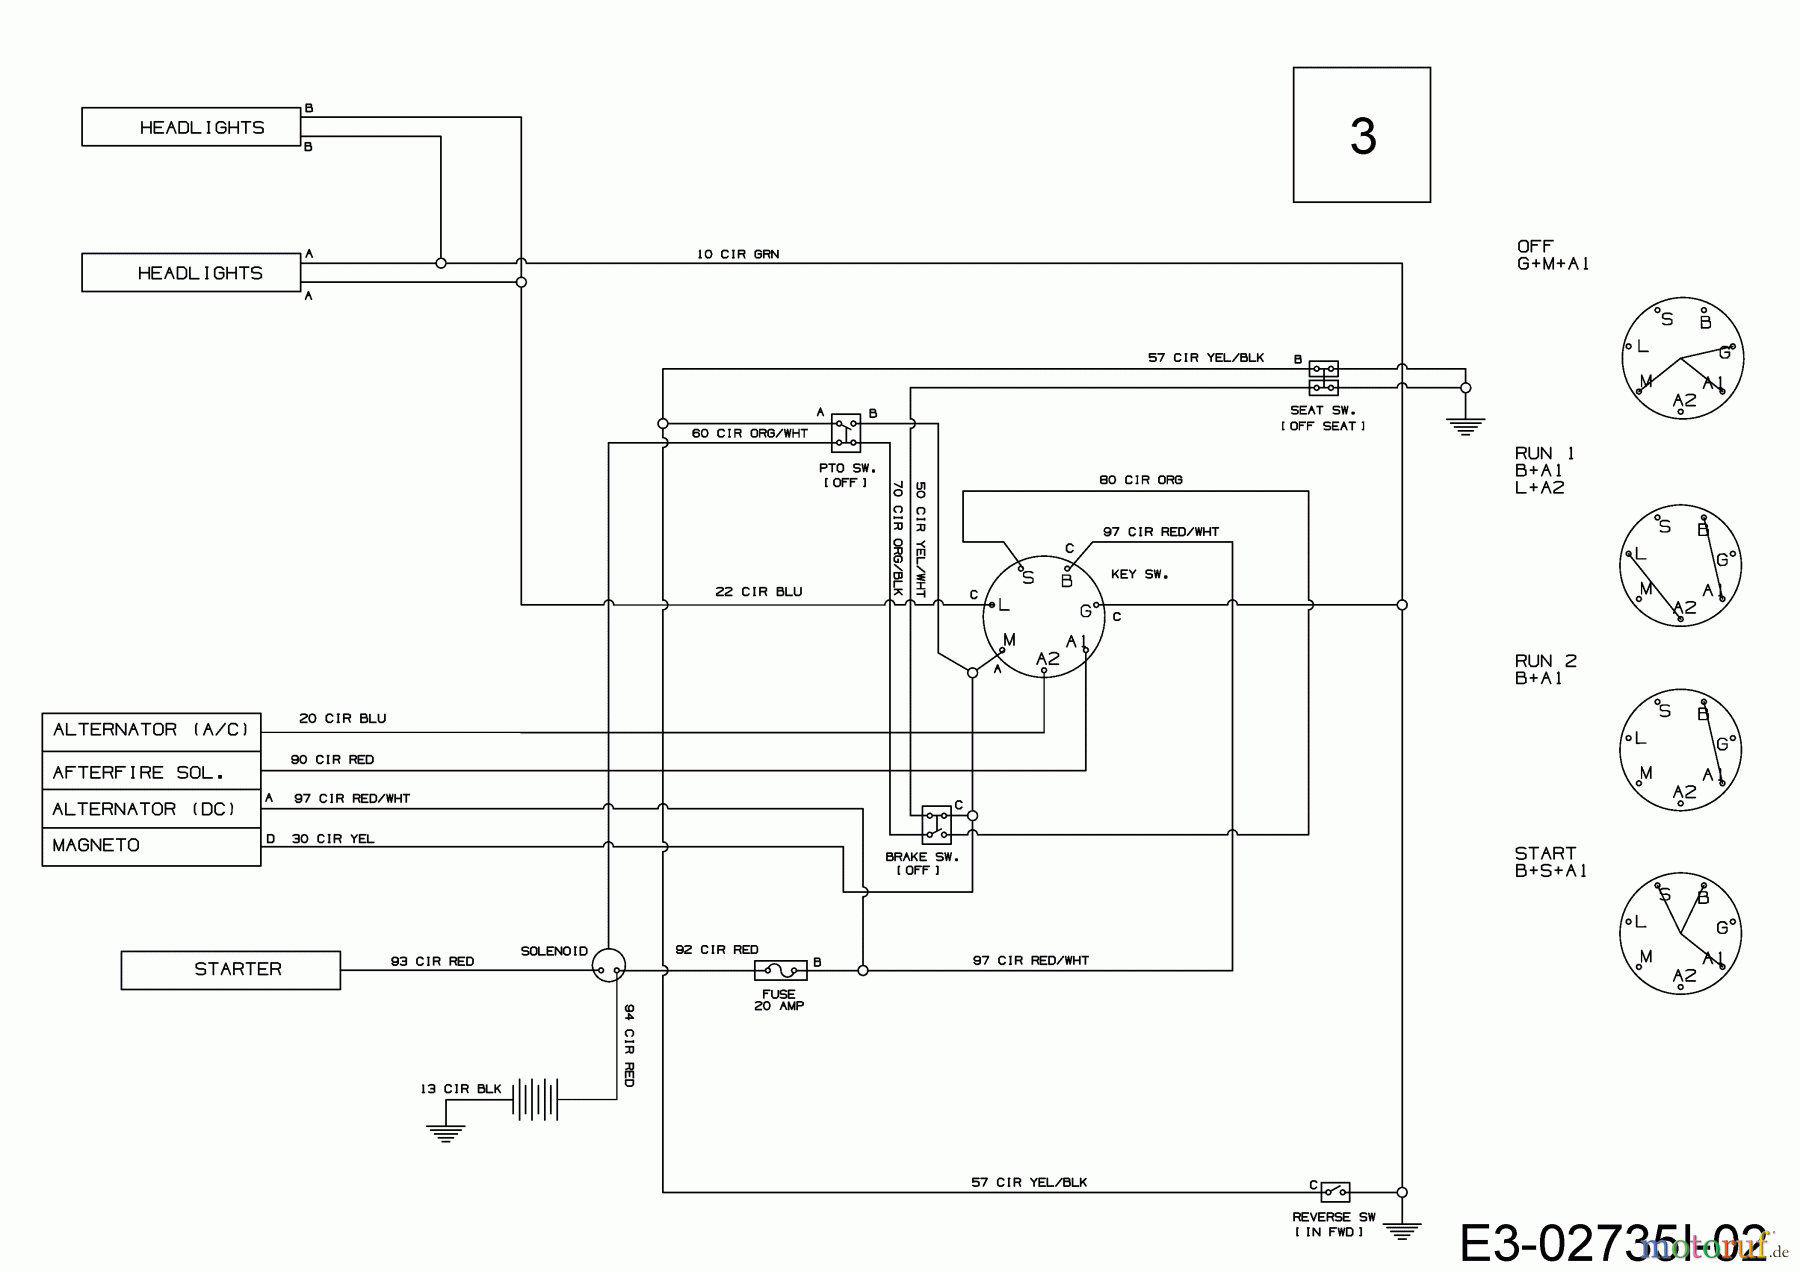  B Power Rasentraktoren BT 145-96 LH 13IM79KF648   (2019) Schaltplan